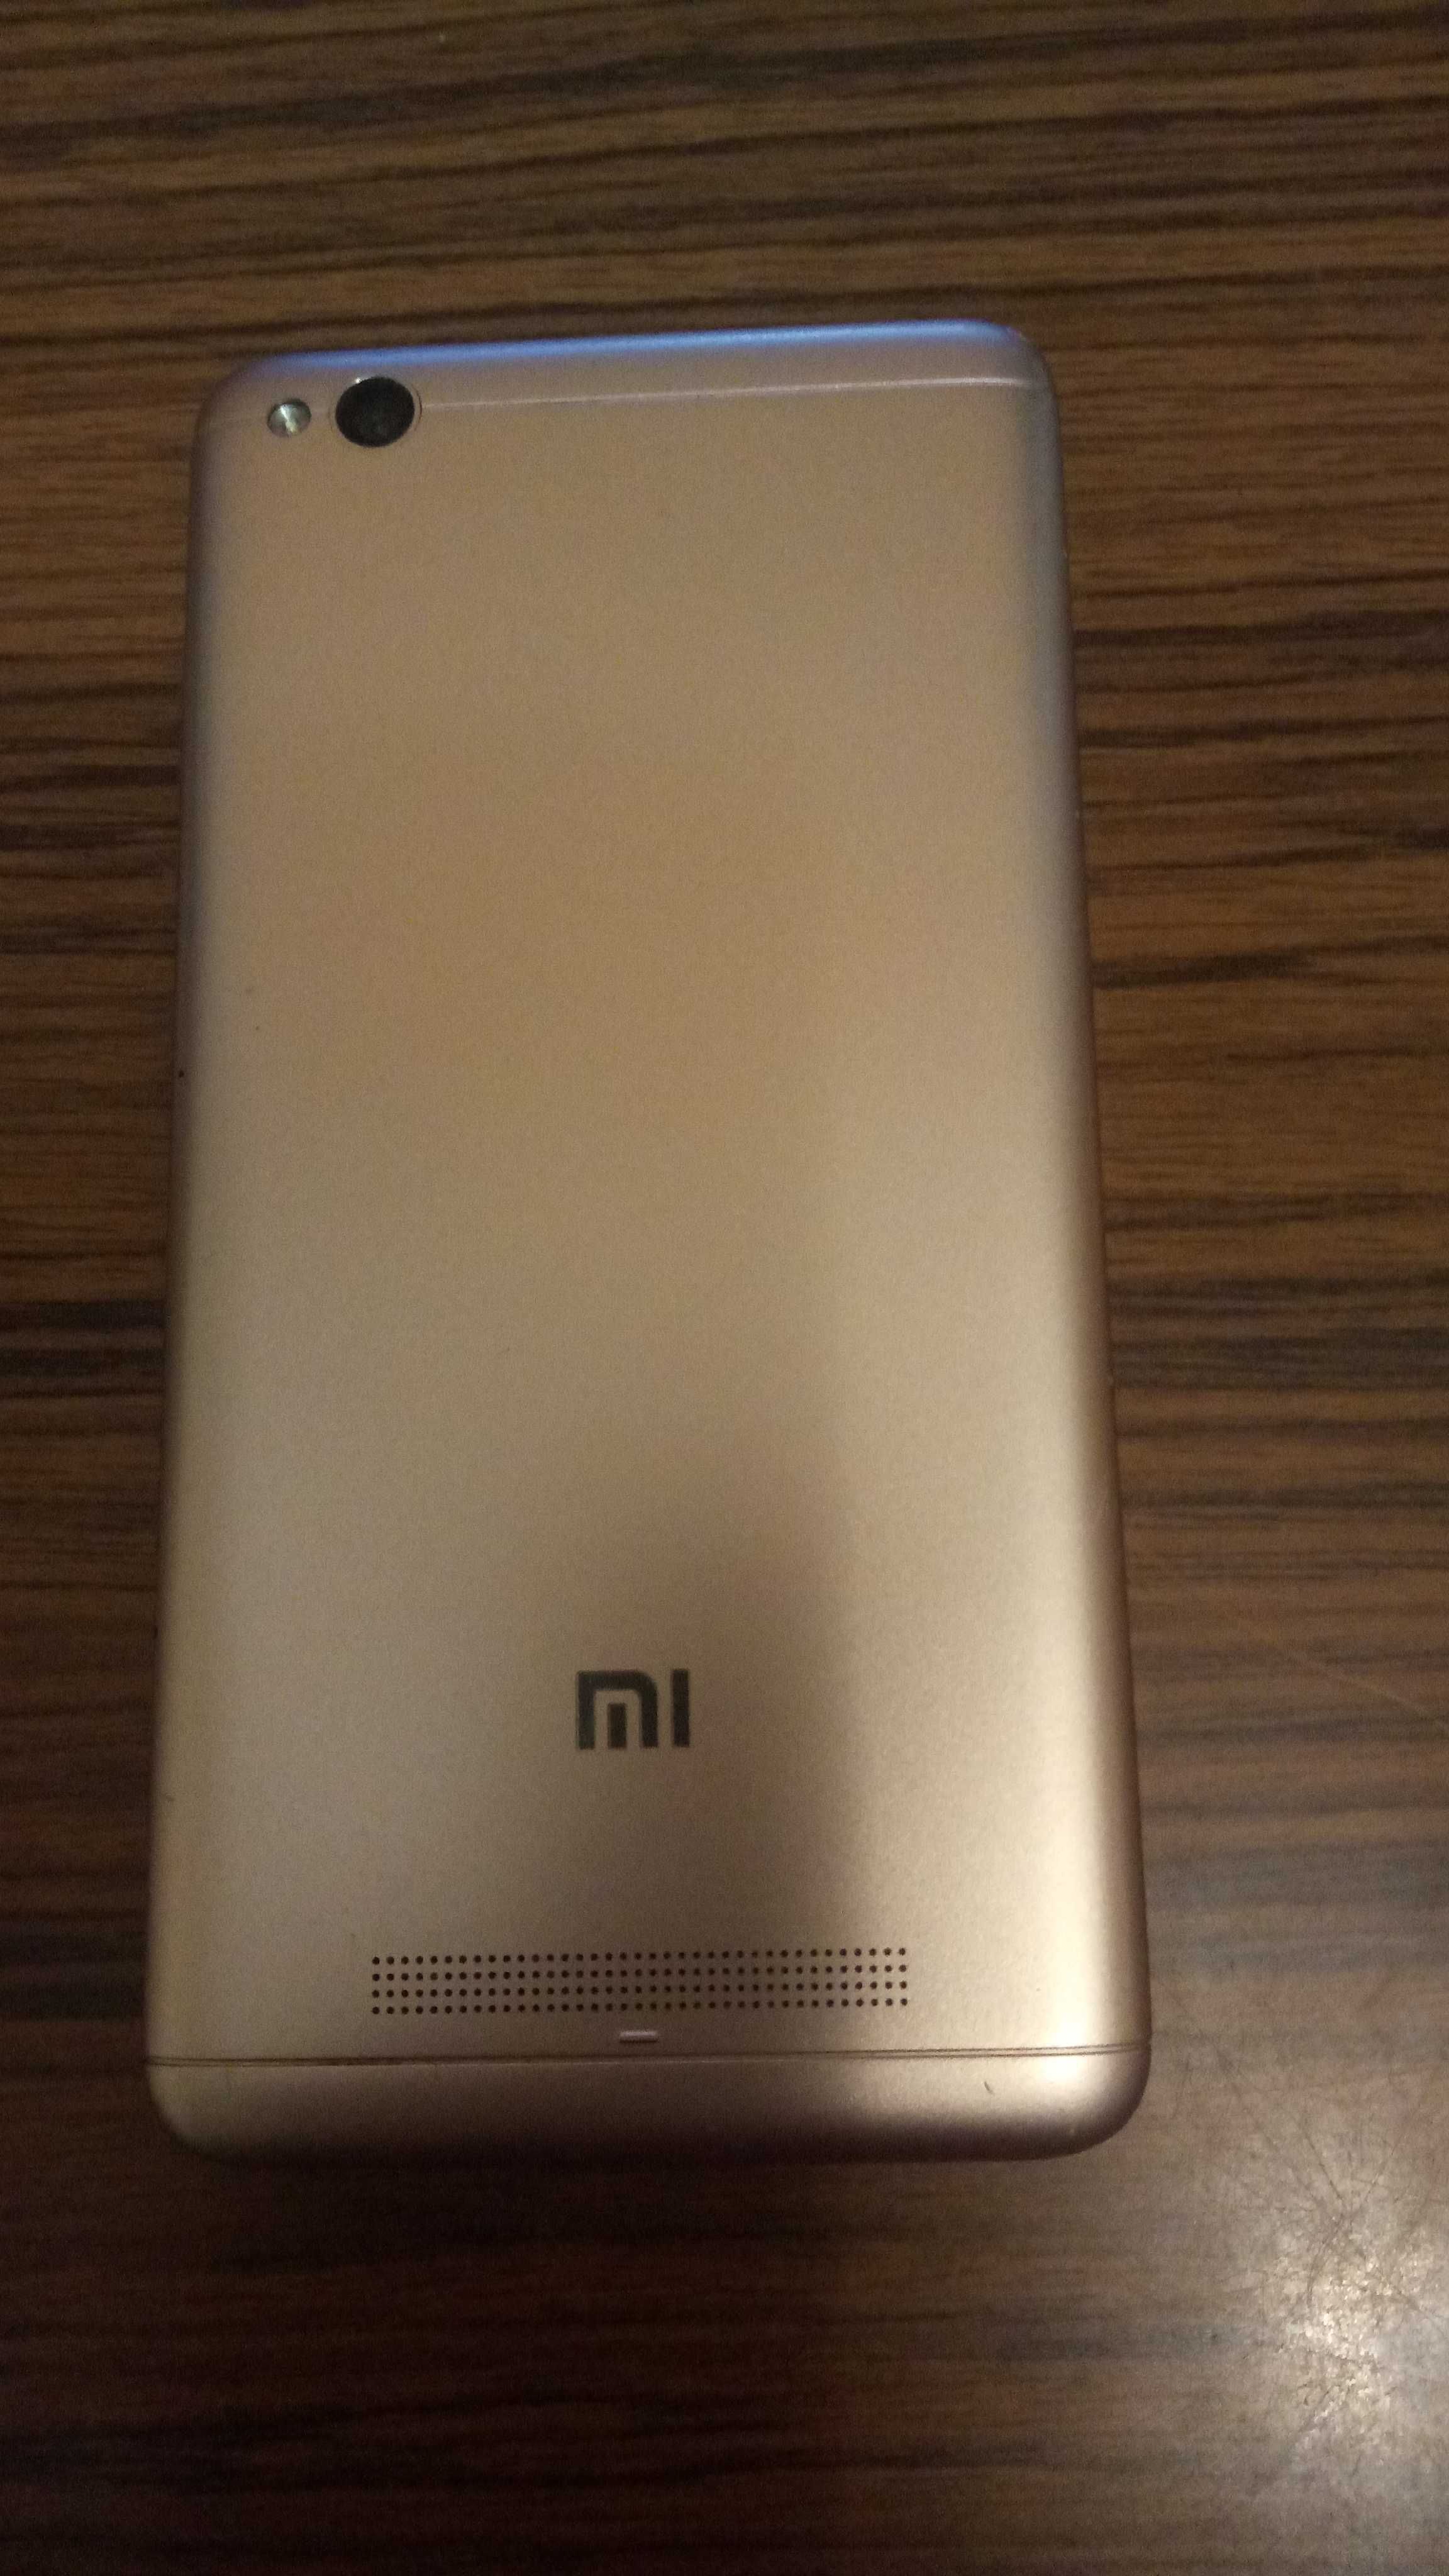 Мобильный телефон Xiaomi Redmi 4A 2/32GB б/у в нерабочем состоянии.